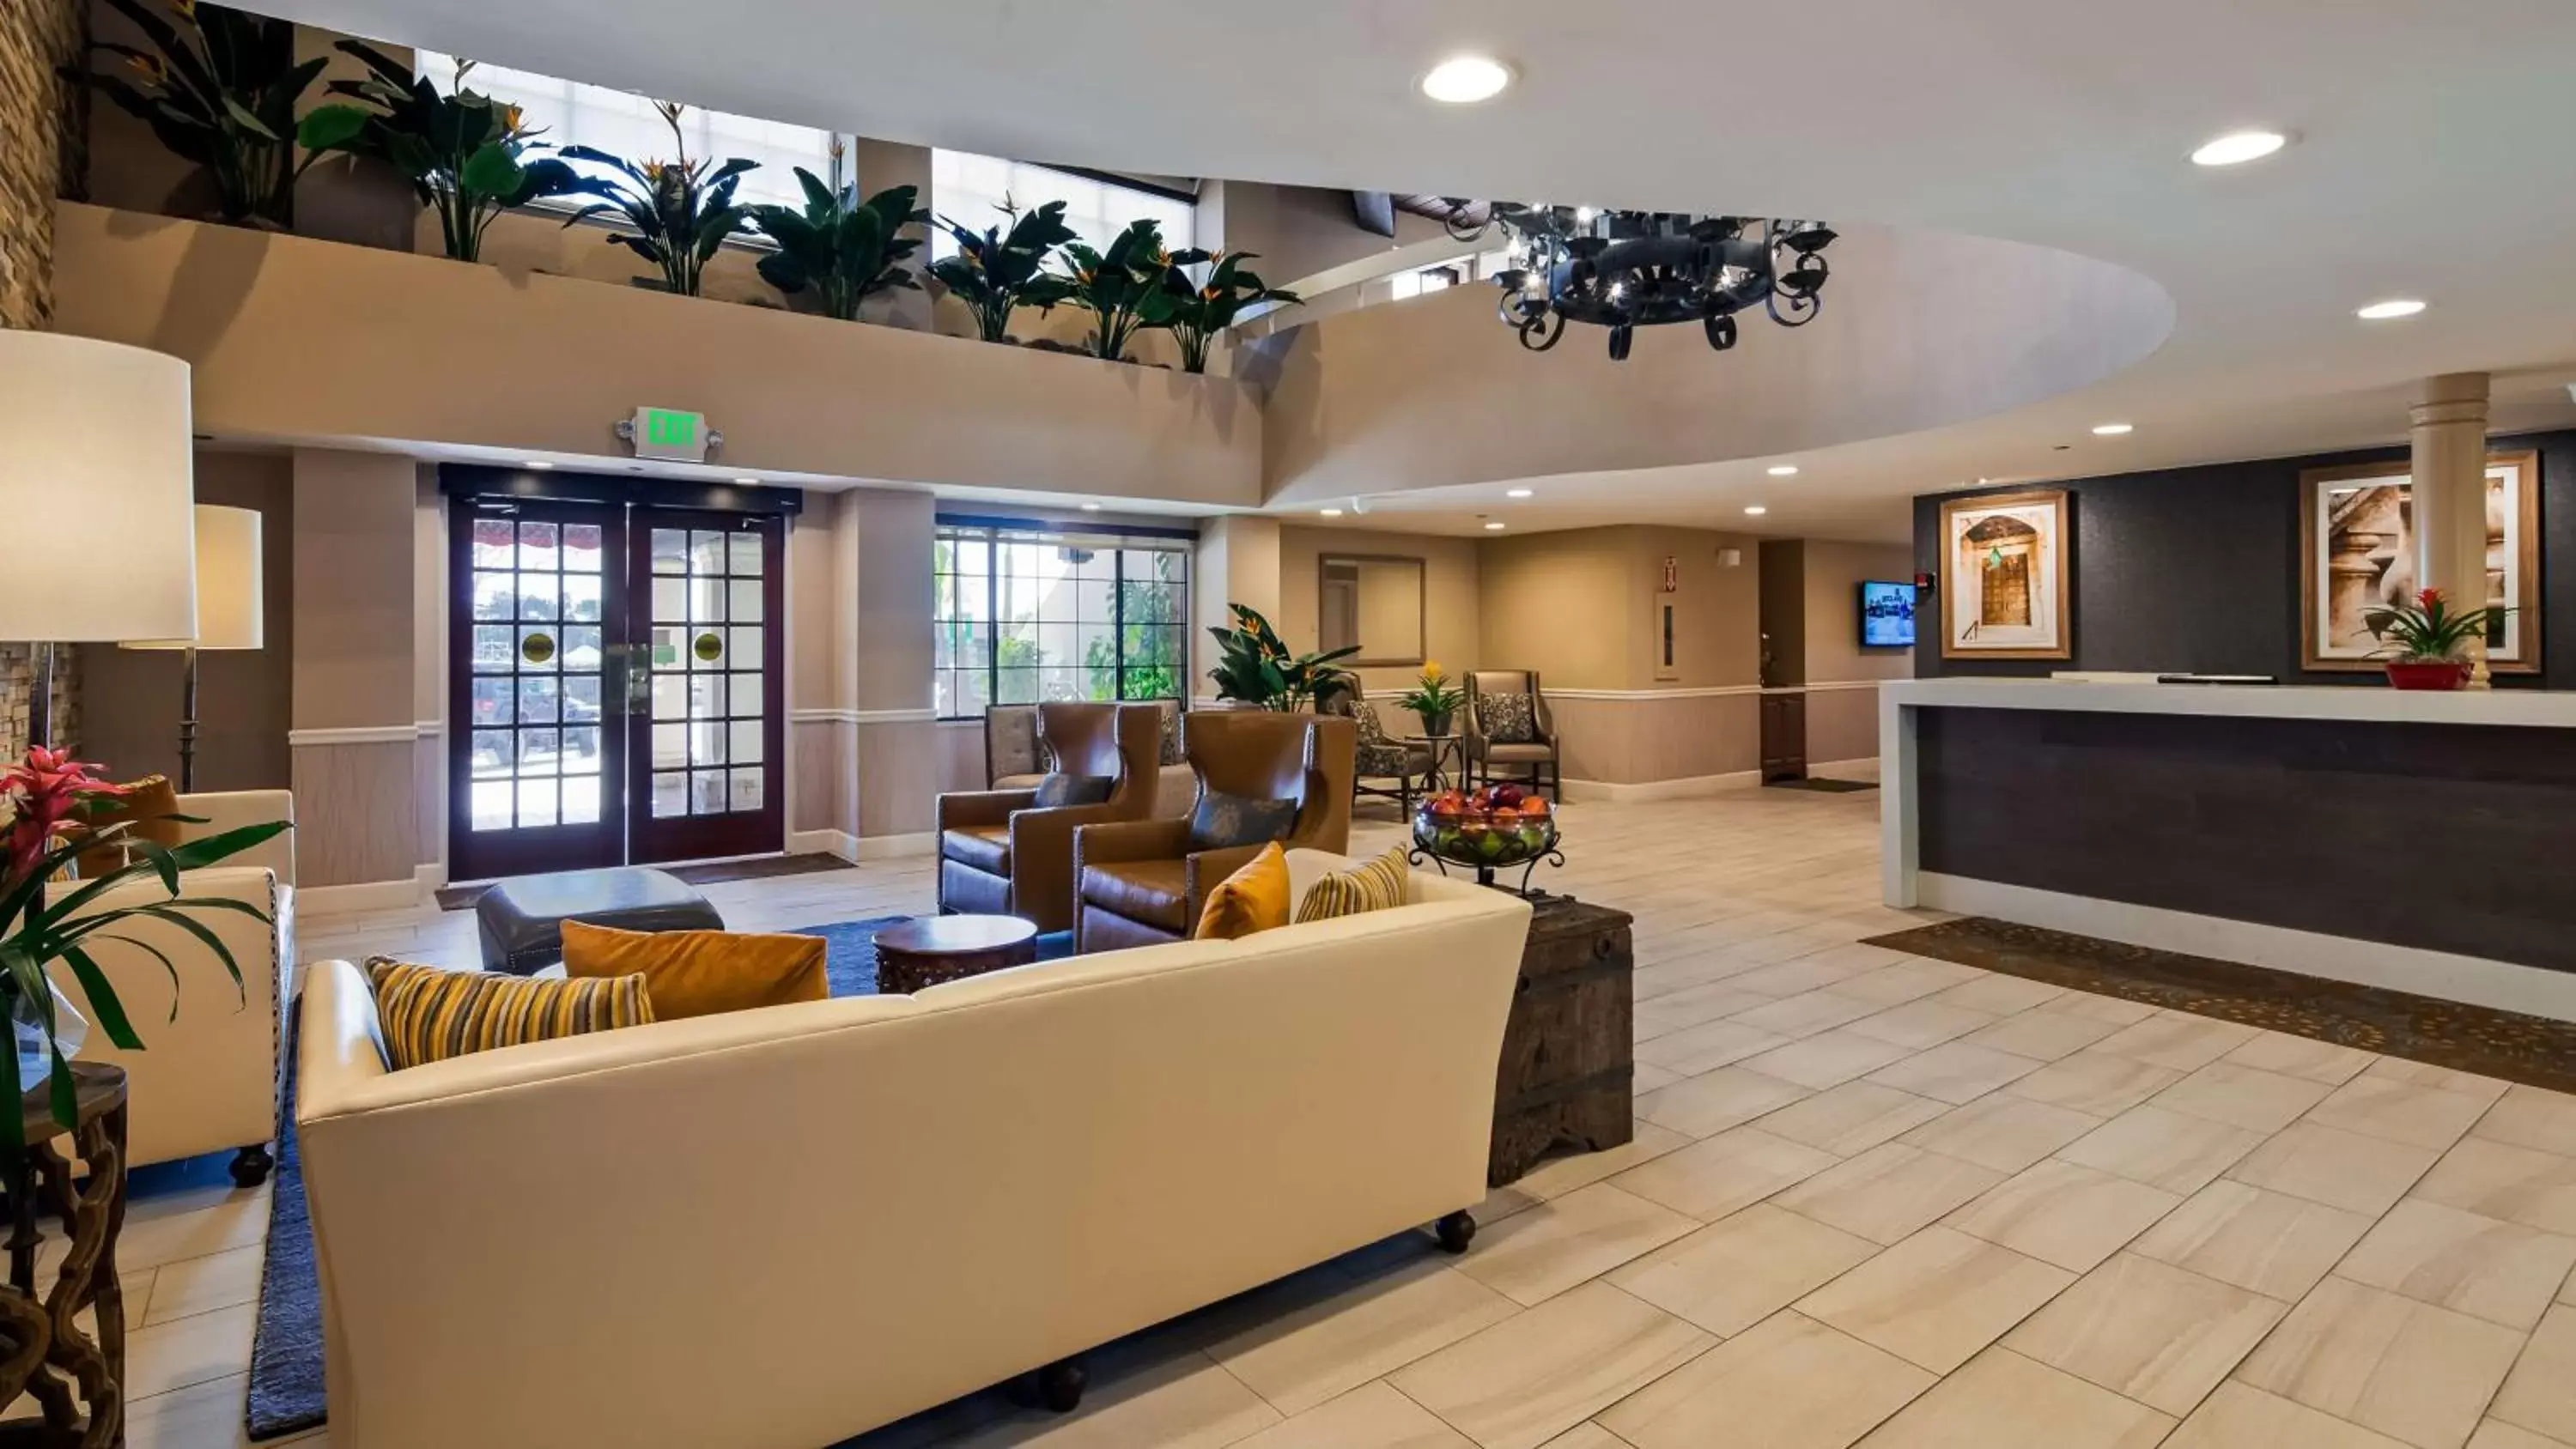 Lobby or reception, Lobby/Reception in Best Western Plus Carpinteria Inn